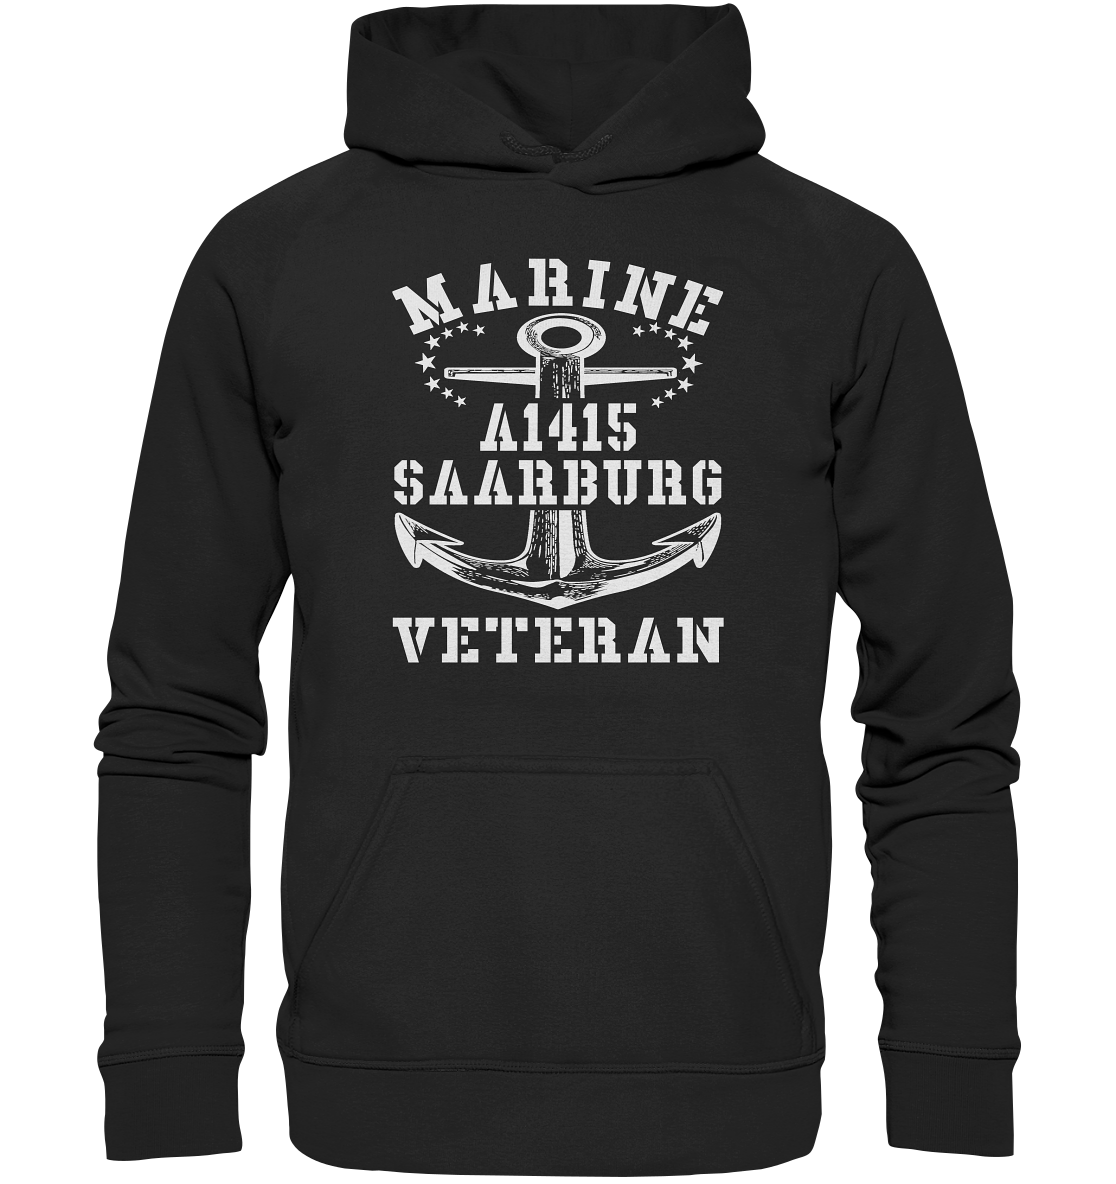 Troßschiff A1415 SAARBURG Marine Veteran - Basic Unisex Hoodie